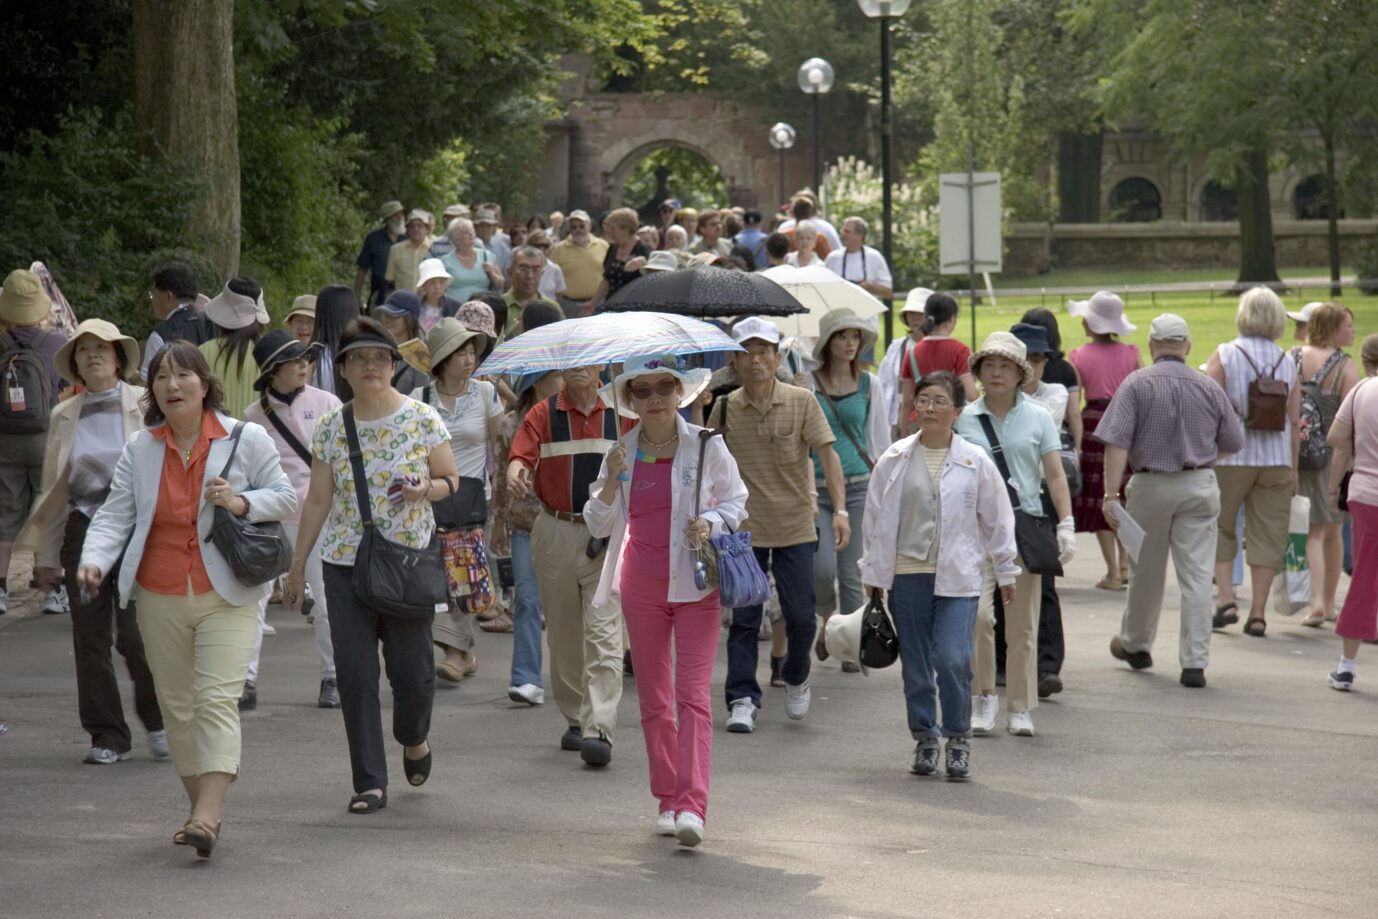 Japanische Touristen am Schloß in Heidelberg: Auf den Spuren Iwakuras wandelnd, erleben sie heute eine Gesellschaft im Niedergang, viel zu lernen gibt es von Deutschland nicht mehr